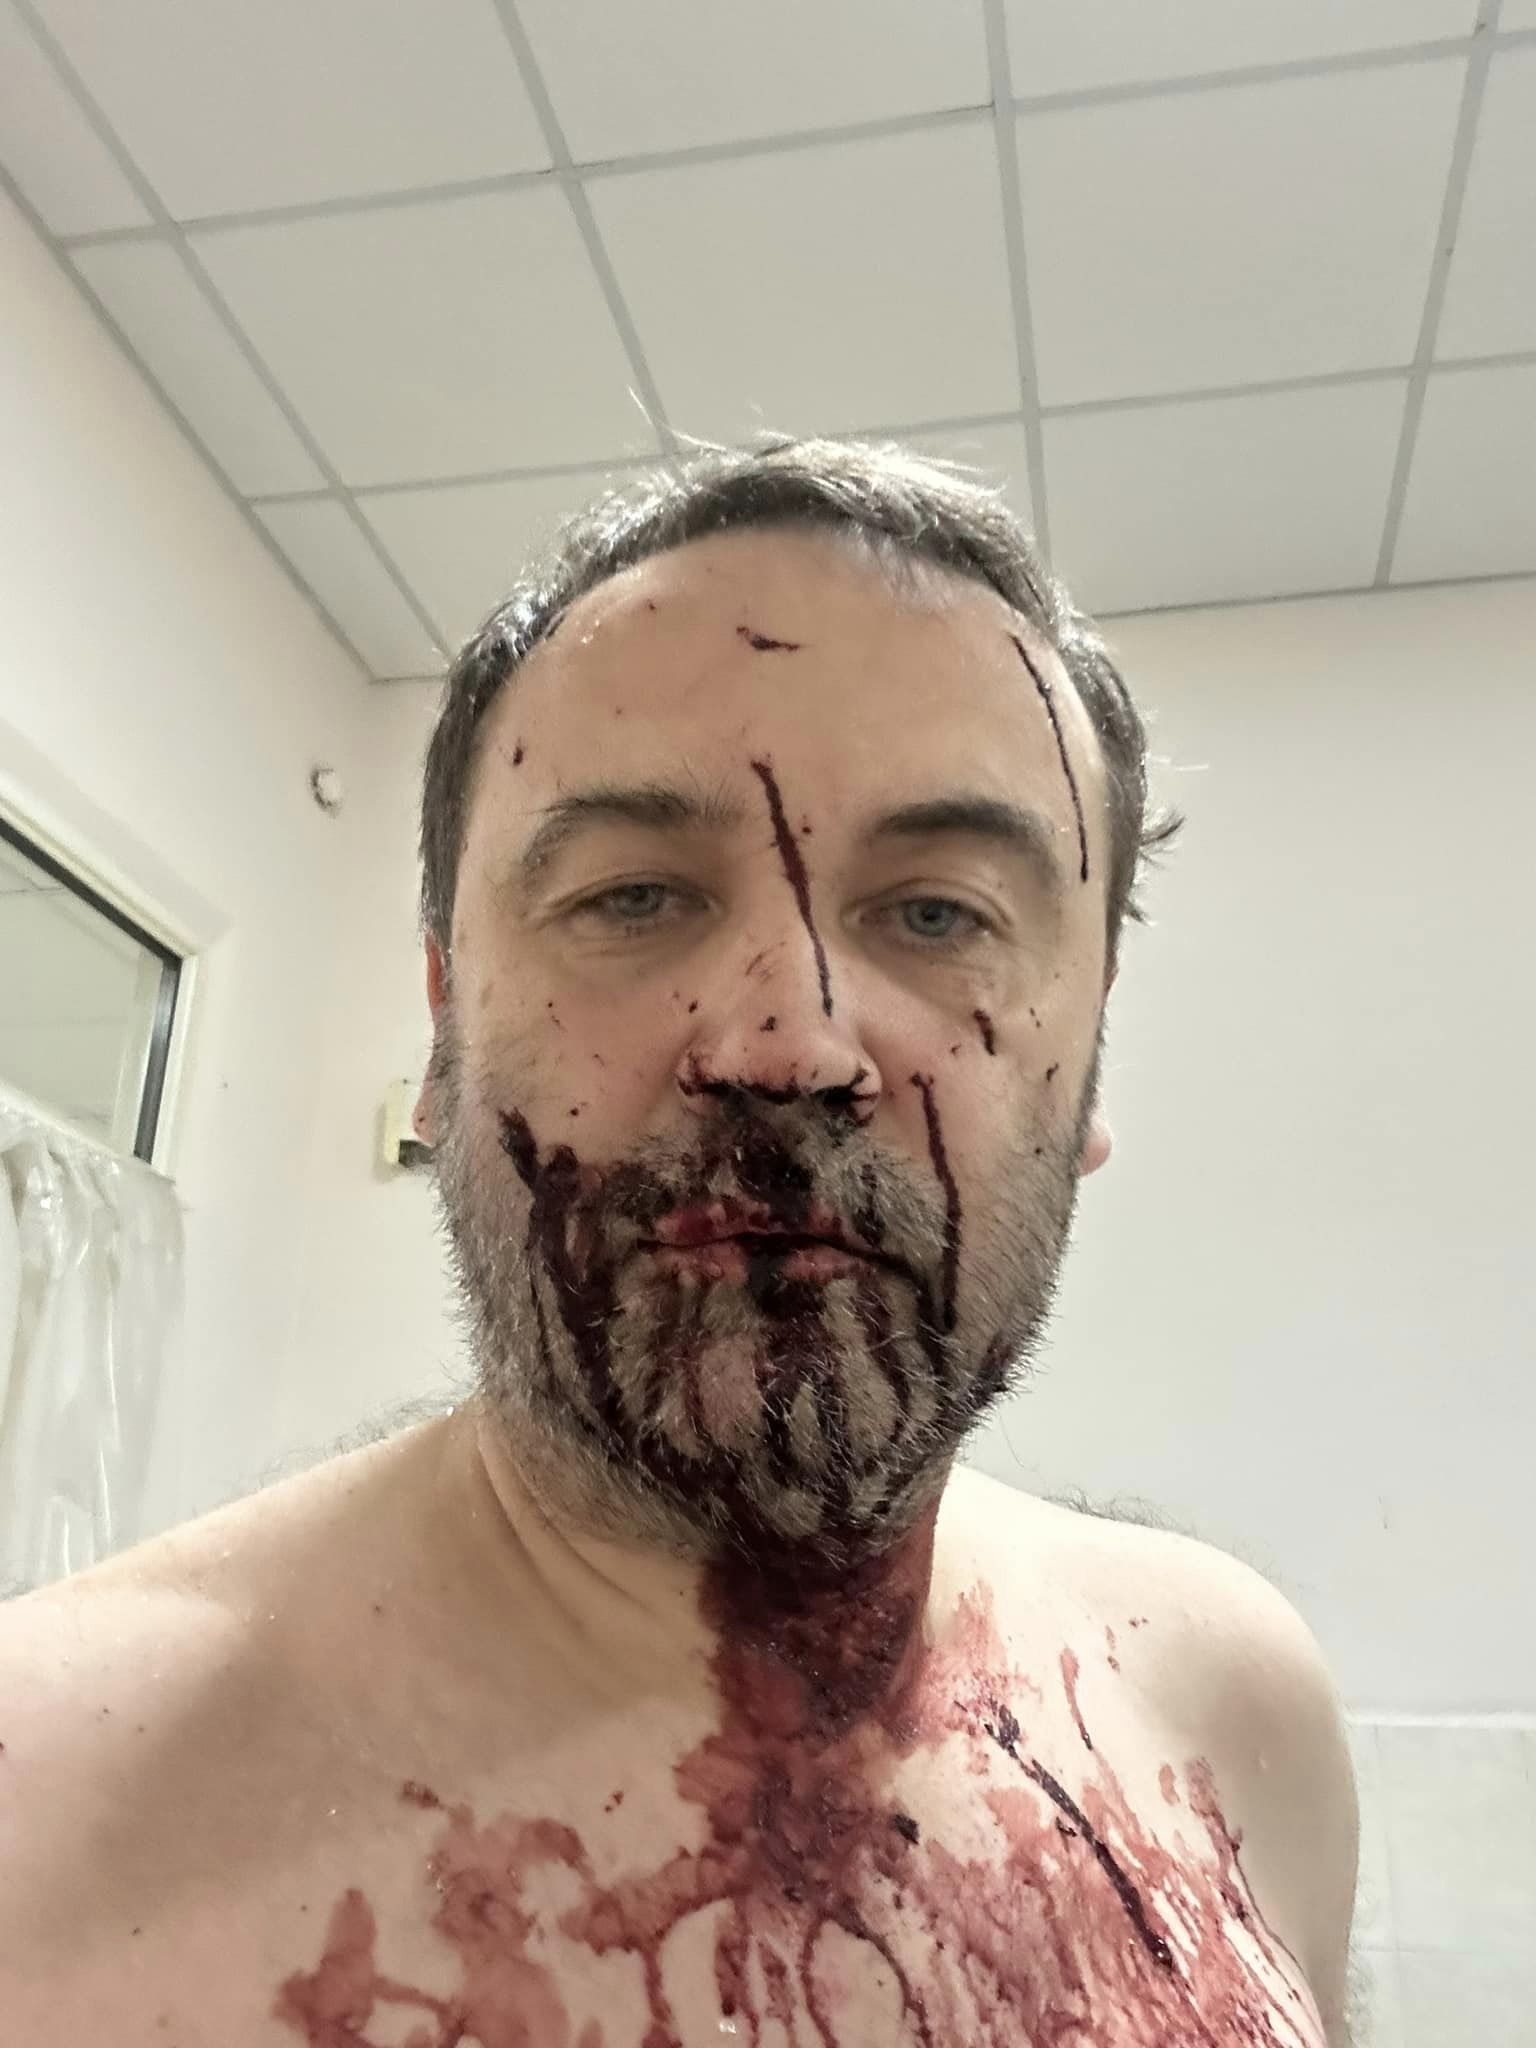 Ілля Пономарьов  після отримах поранень.